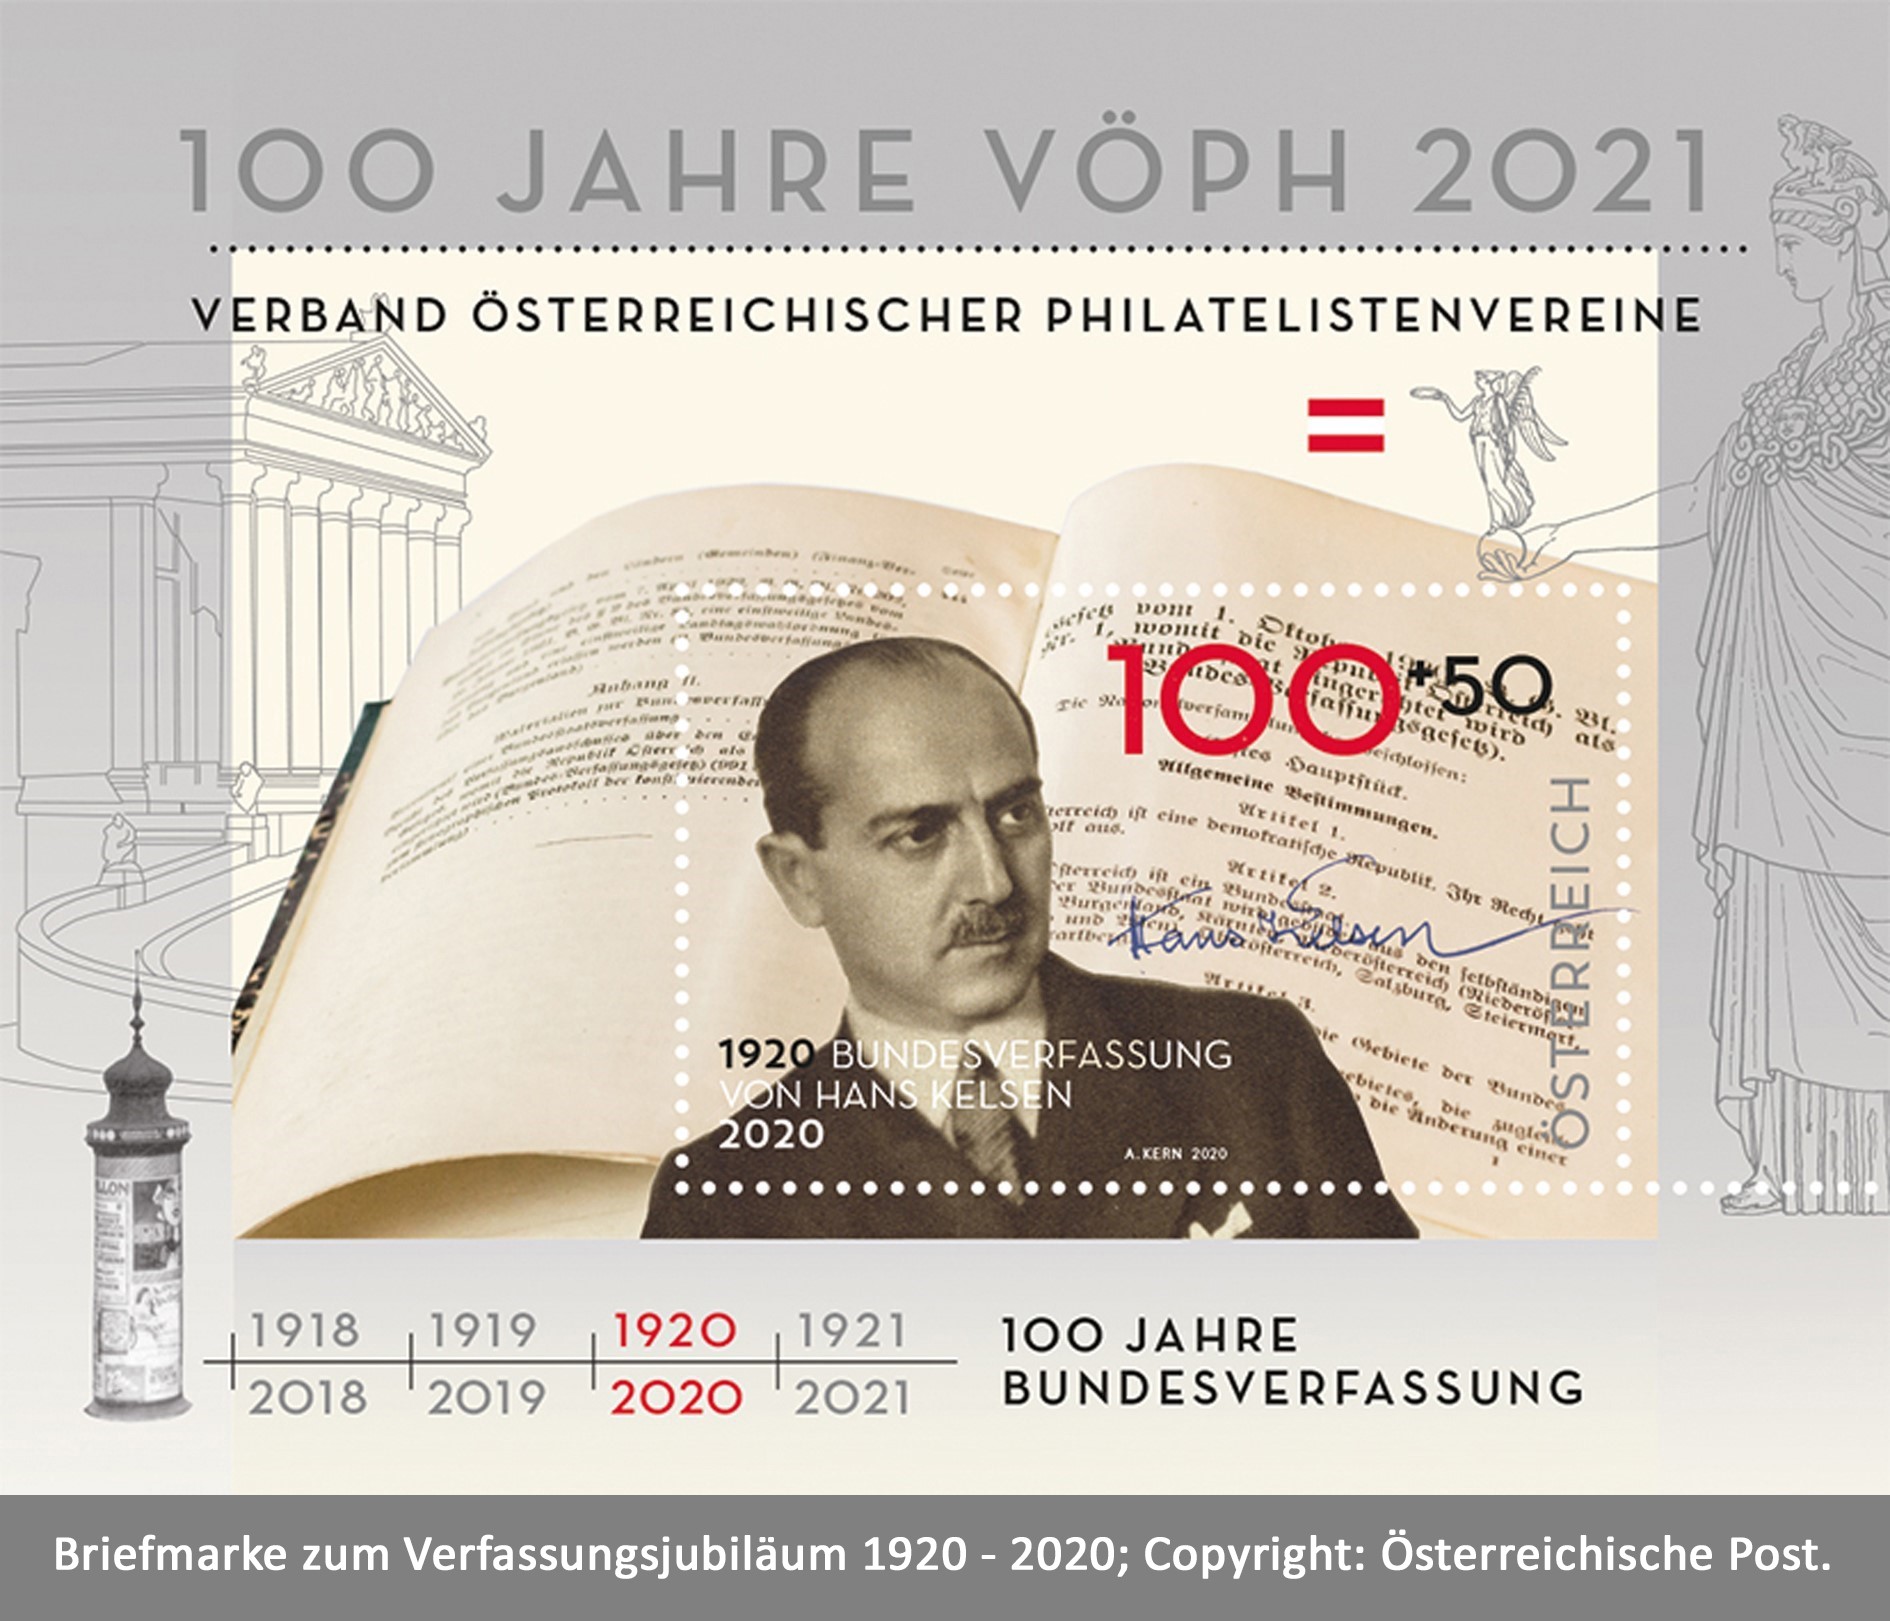 Briefmarke zum 100jährigen Verfassungsjubiläum mit Portrait von Hans Kelsen.